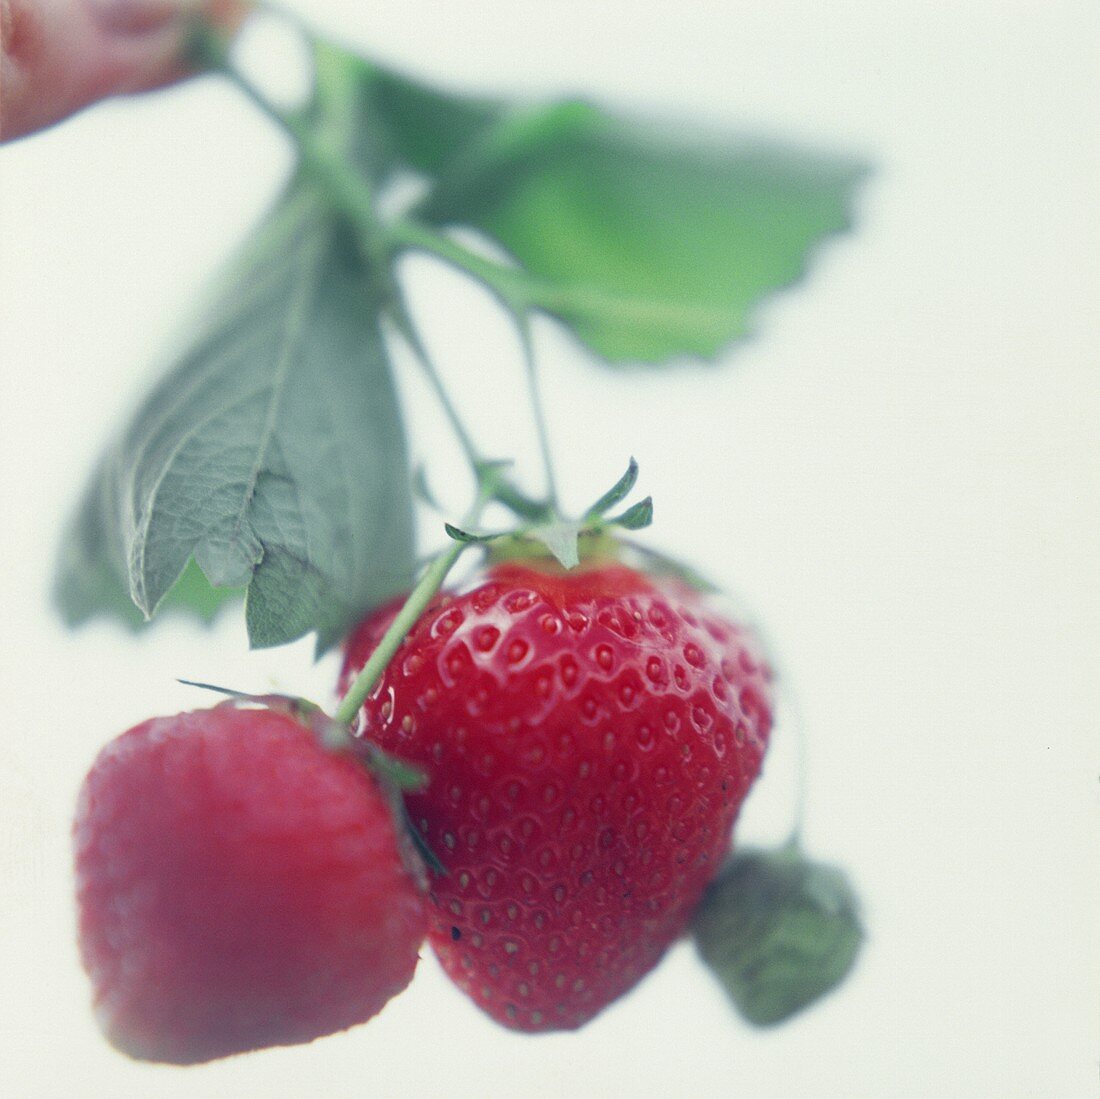 Hintergrund: Erdbeeren mit Stiel und Blättern (Soft)